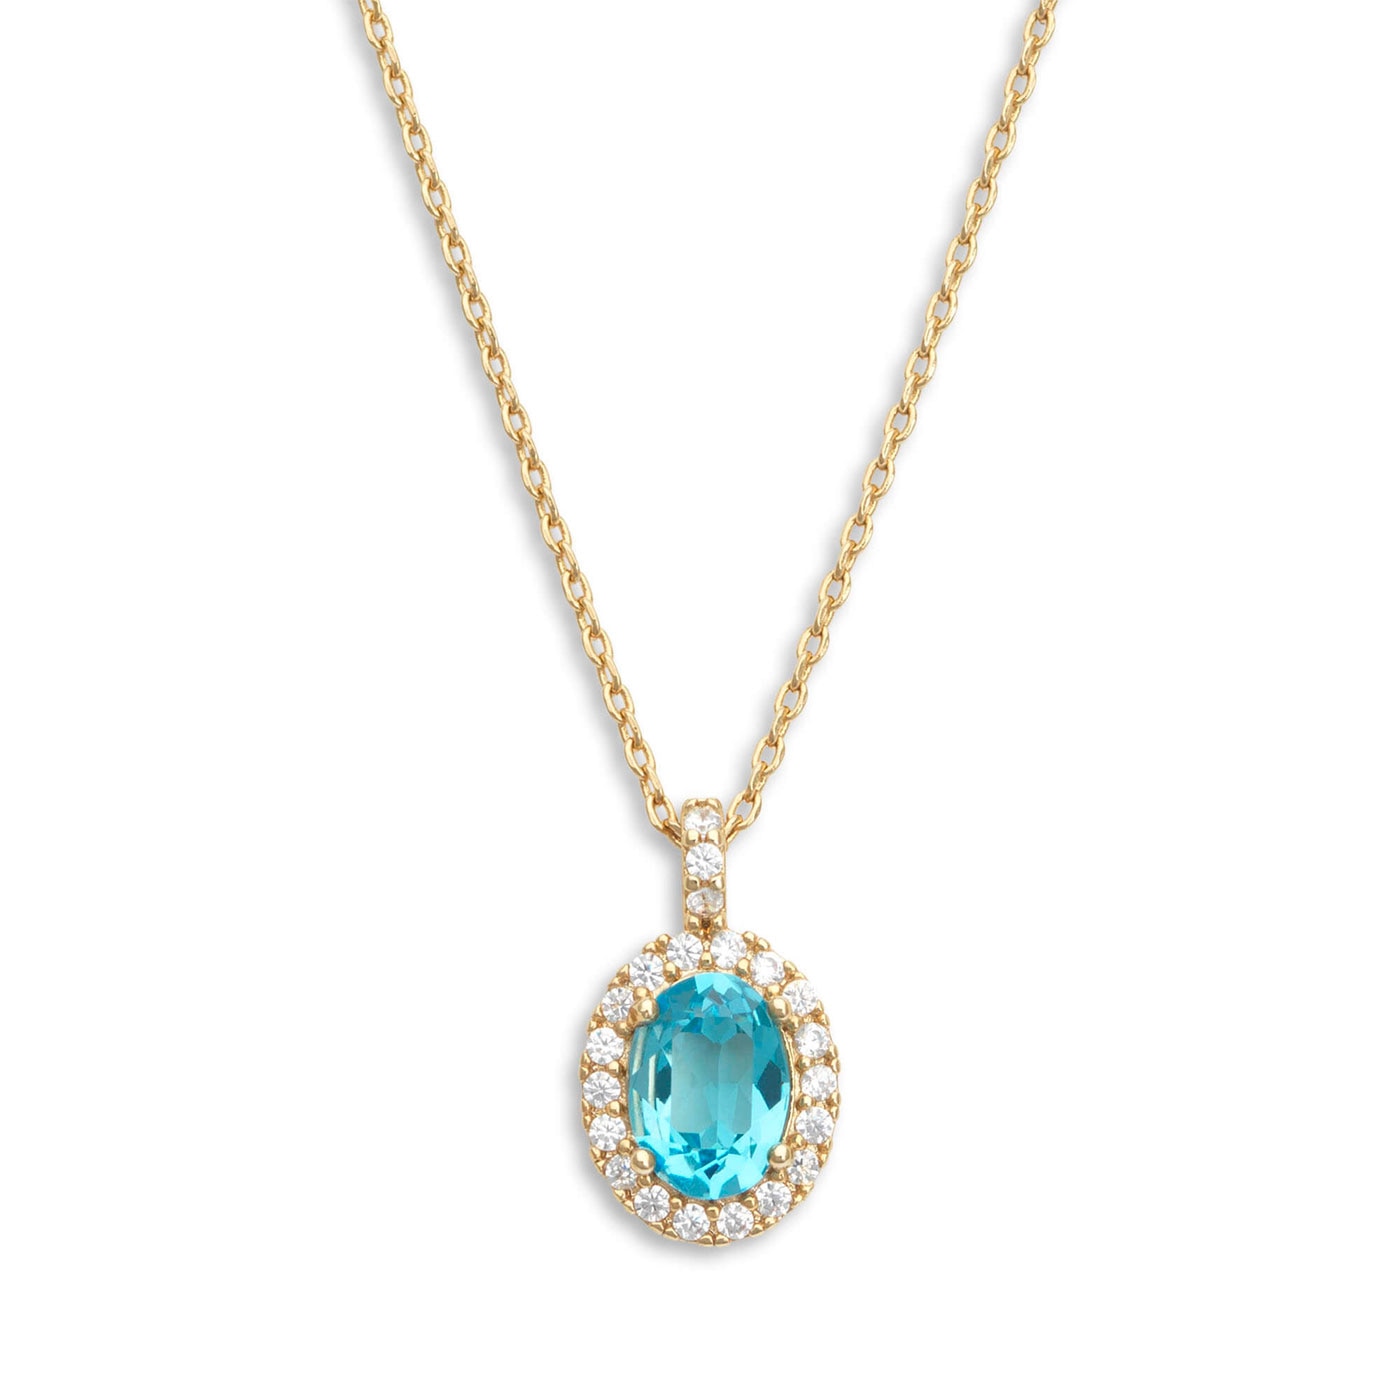 Luna necklace - Aquamarine